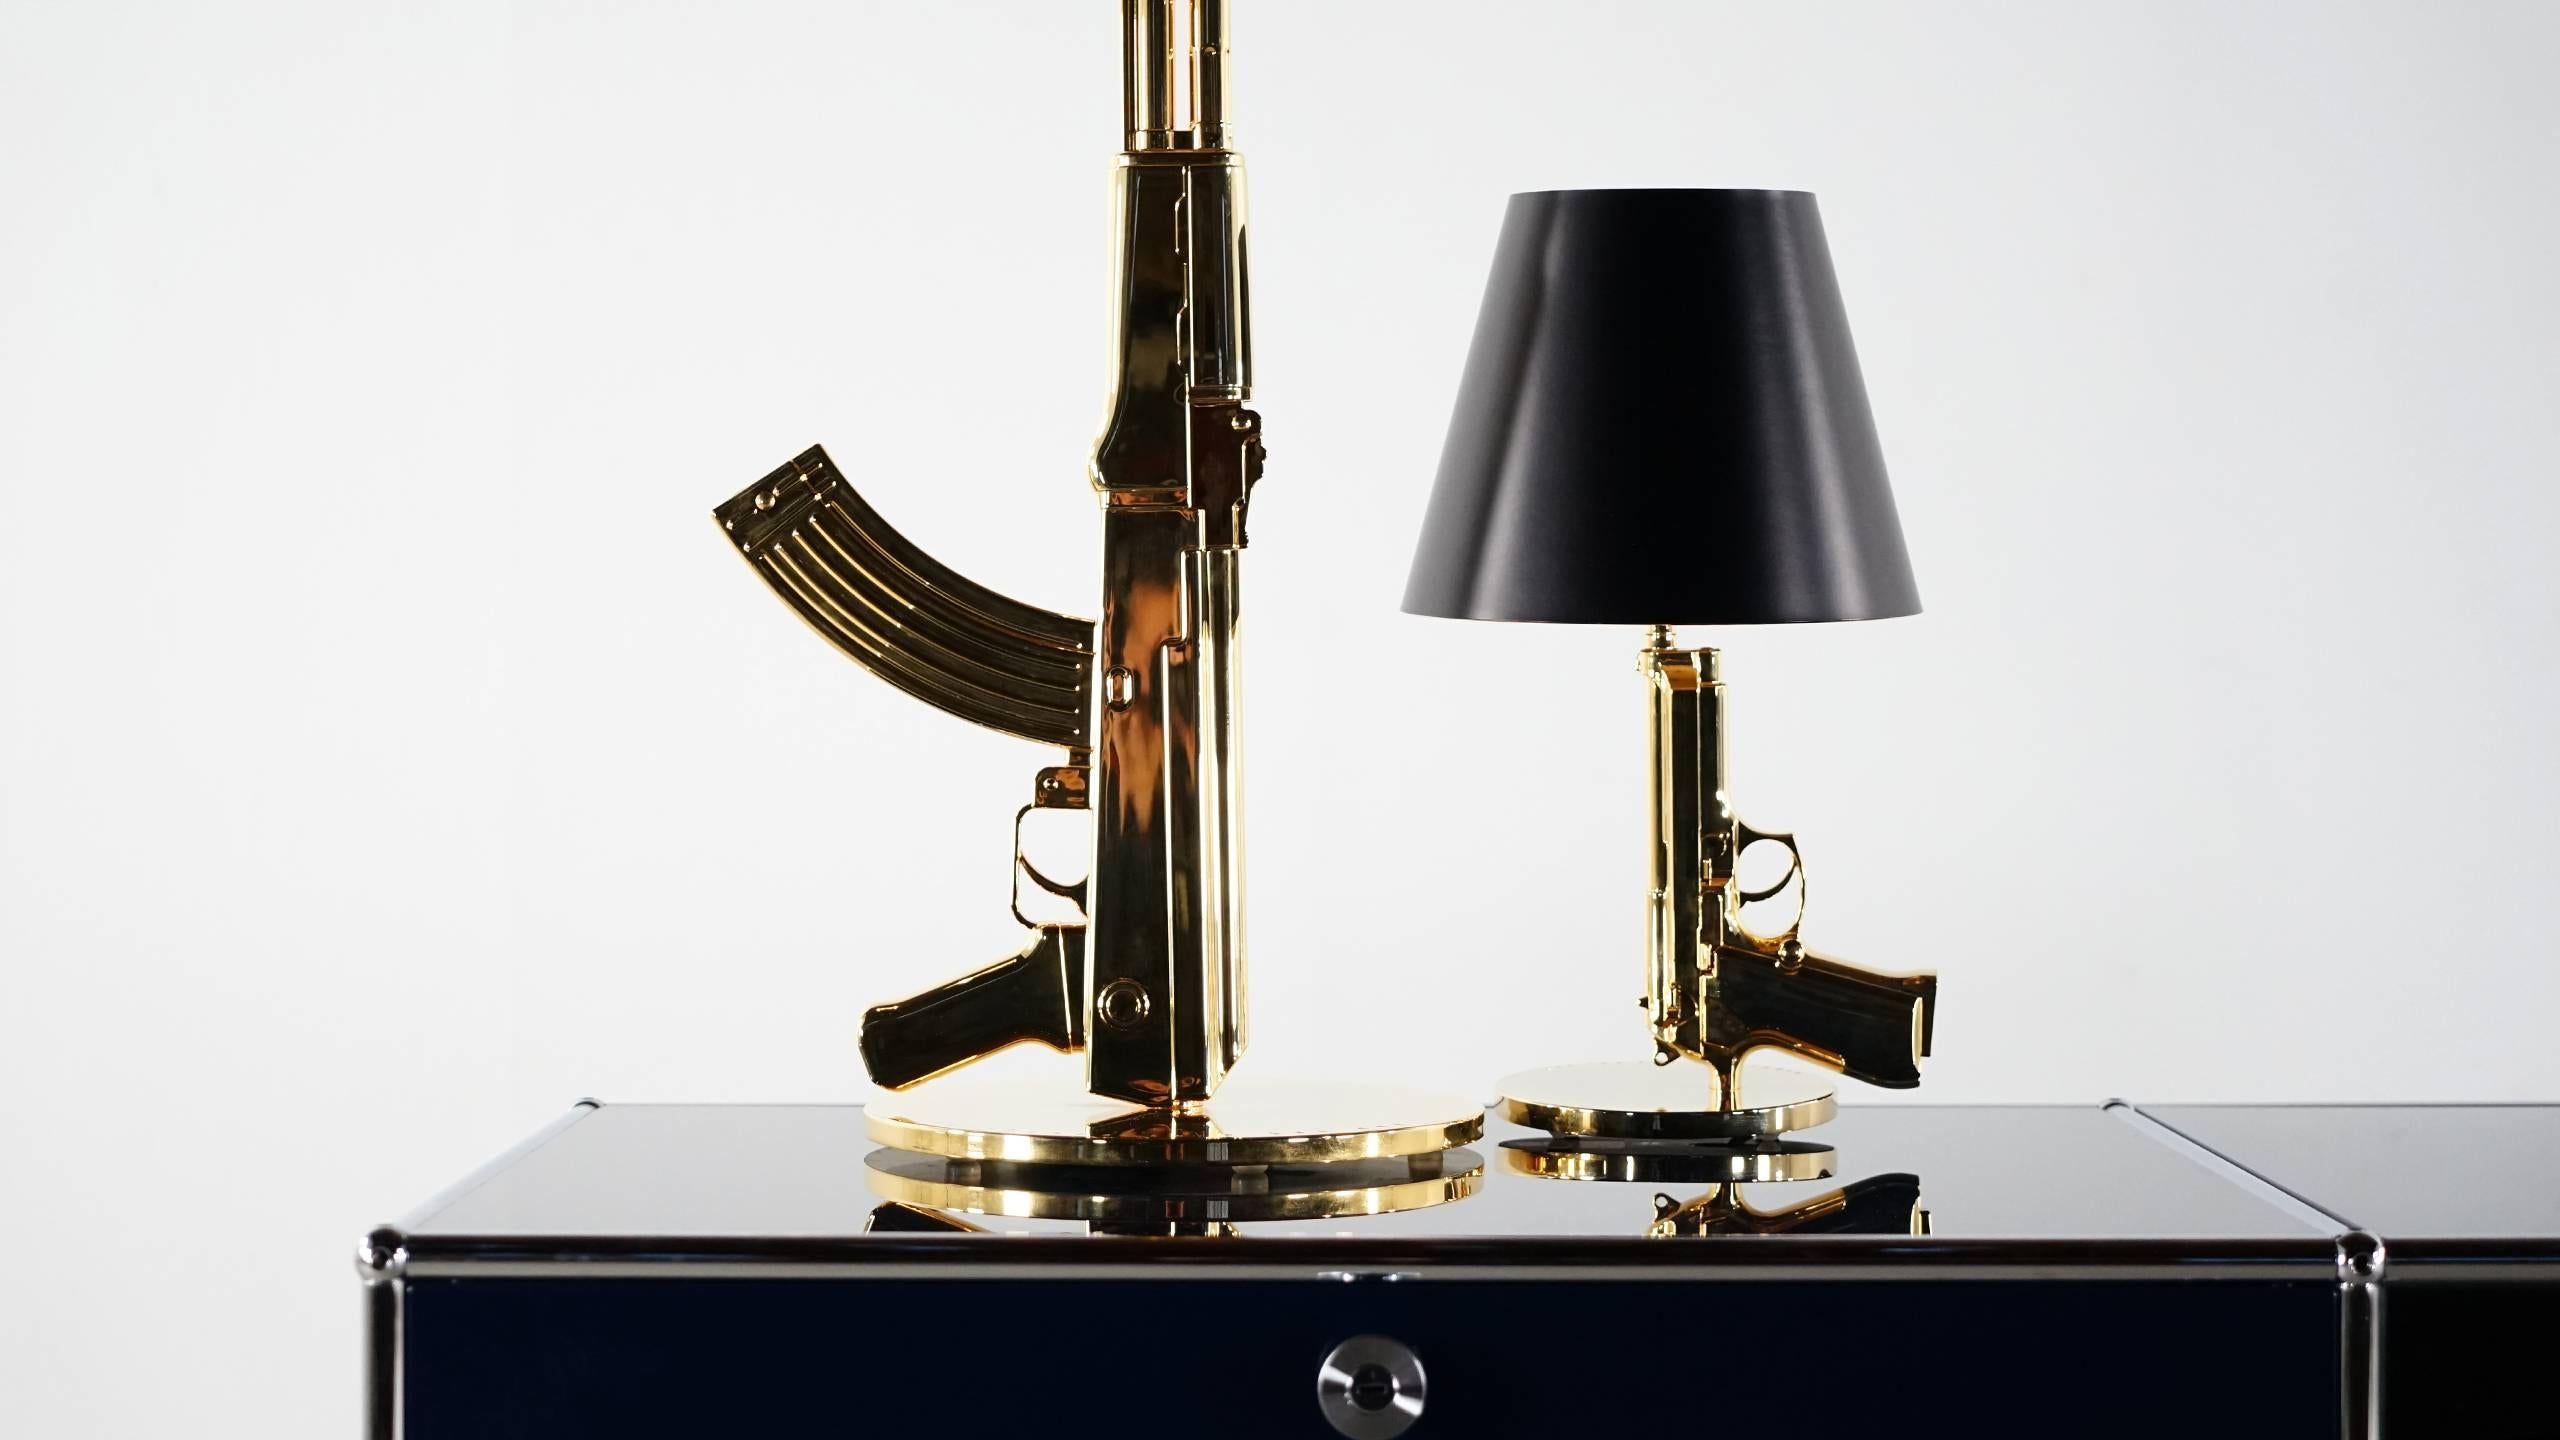 Flos Gun Lamp - 6 For Sale on 1stDibs | flos gun lamp replica, gun lamps  for sale, gunlamp